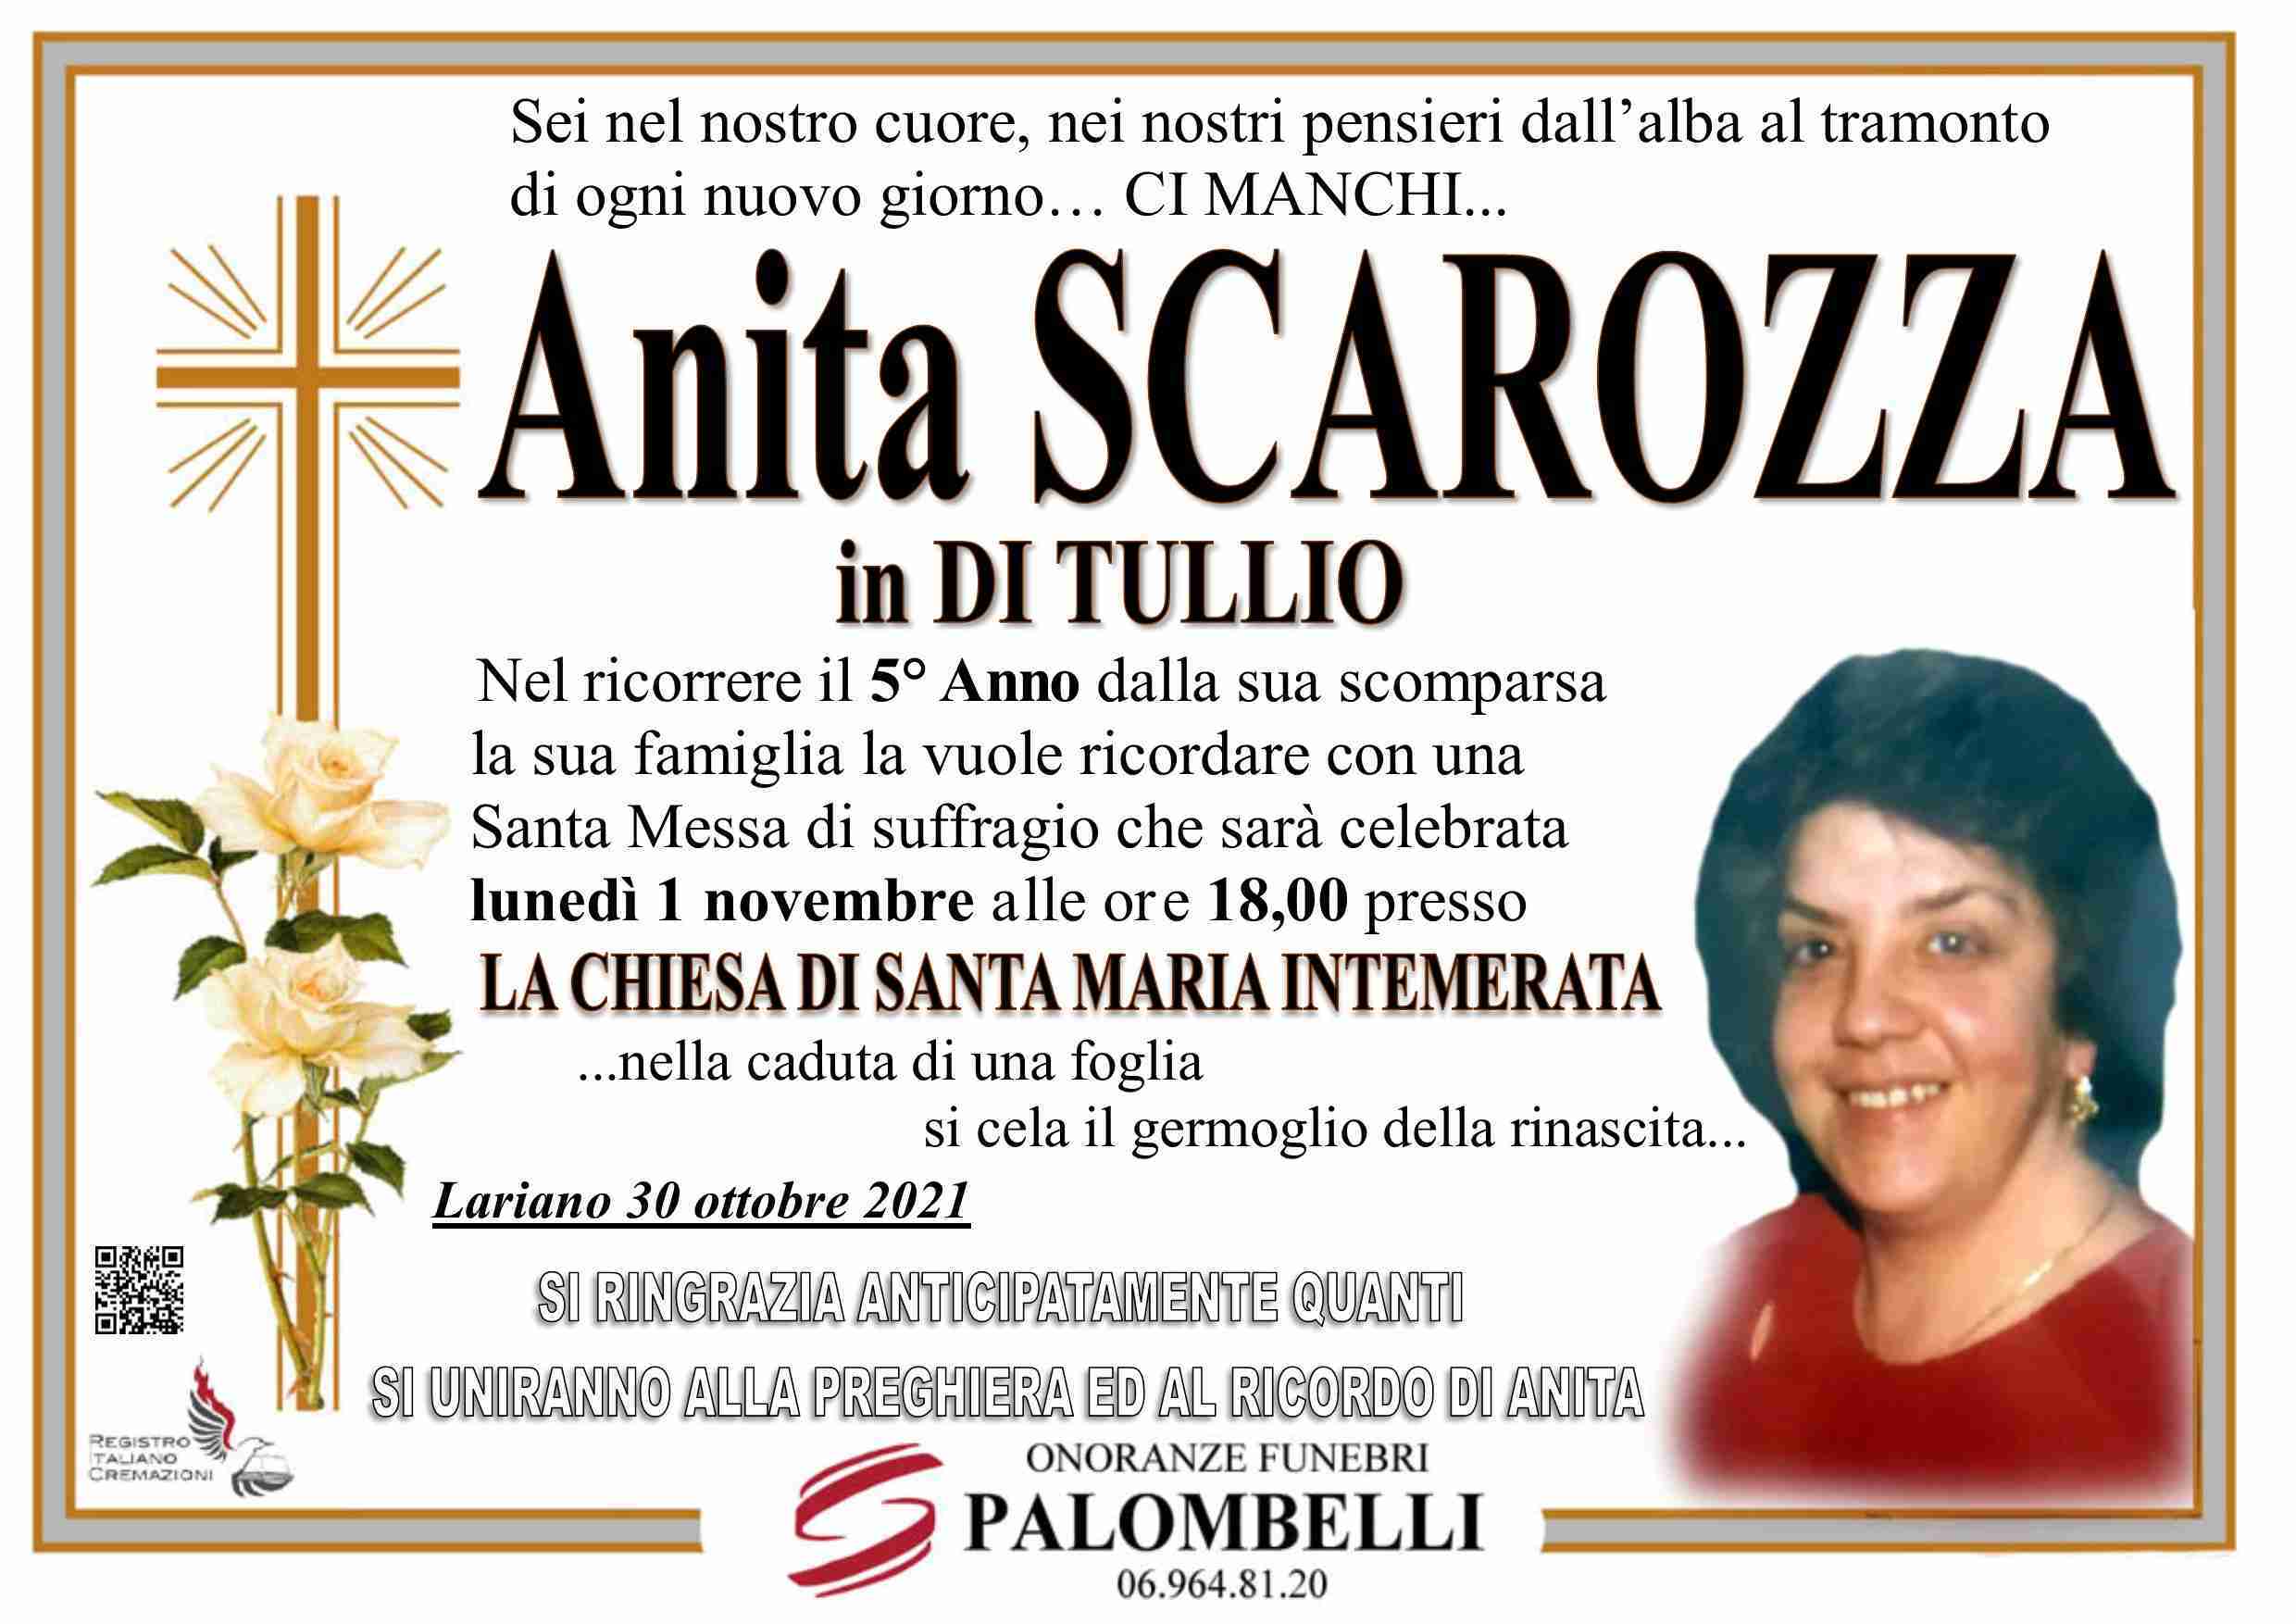 Anita Scarozza